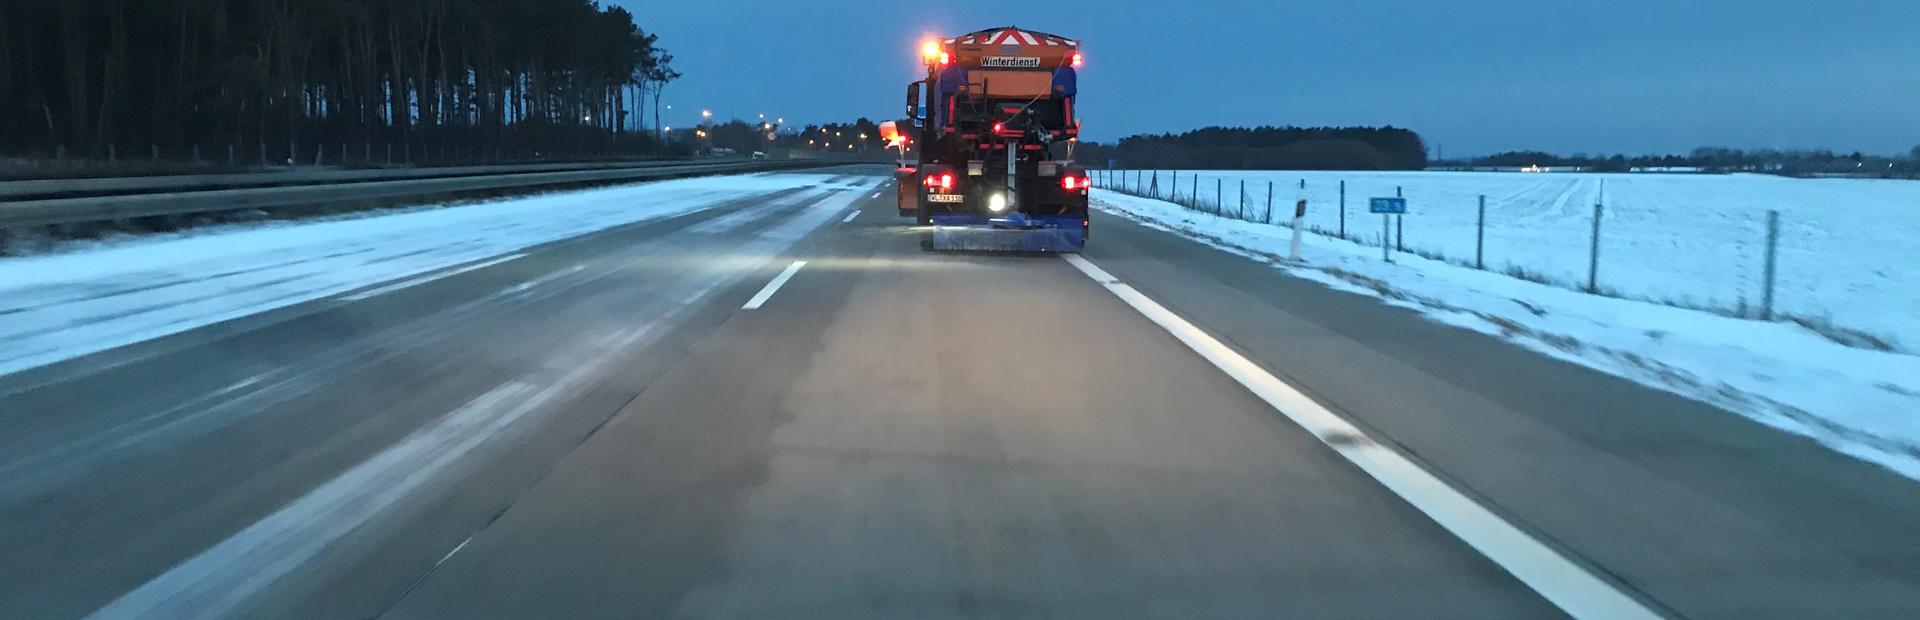 Zu abendlicher Stunde fährt ein Winterdienstfahrzeug auf dem Autobahn-Bestandnetz der Niederlassung Nord seine Tour, um die Fahrbahnen schnee- und eisfrei zu halten